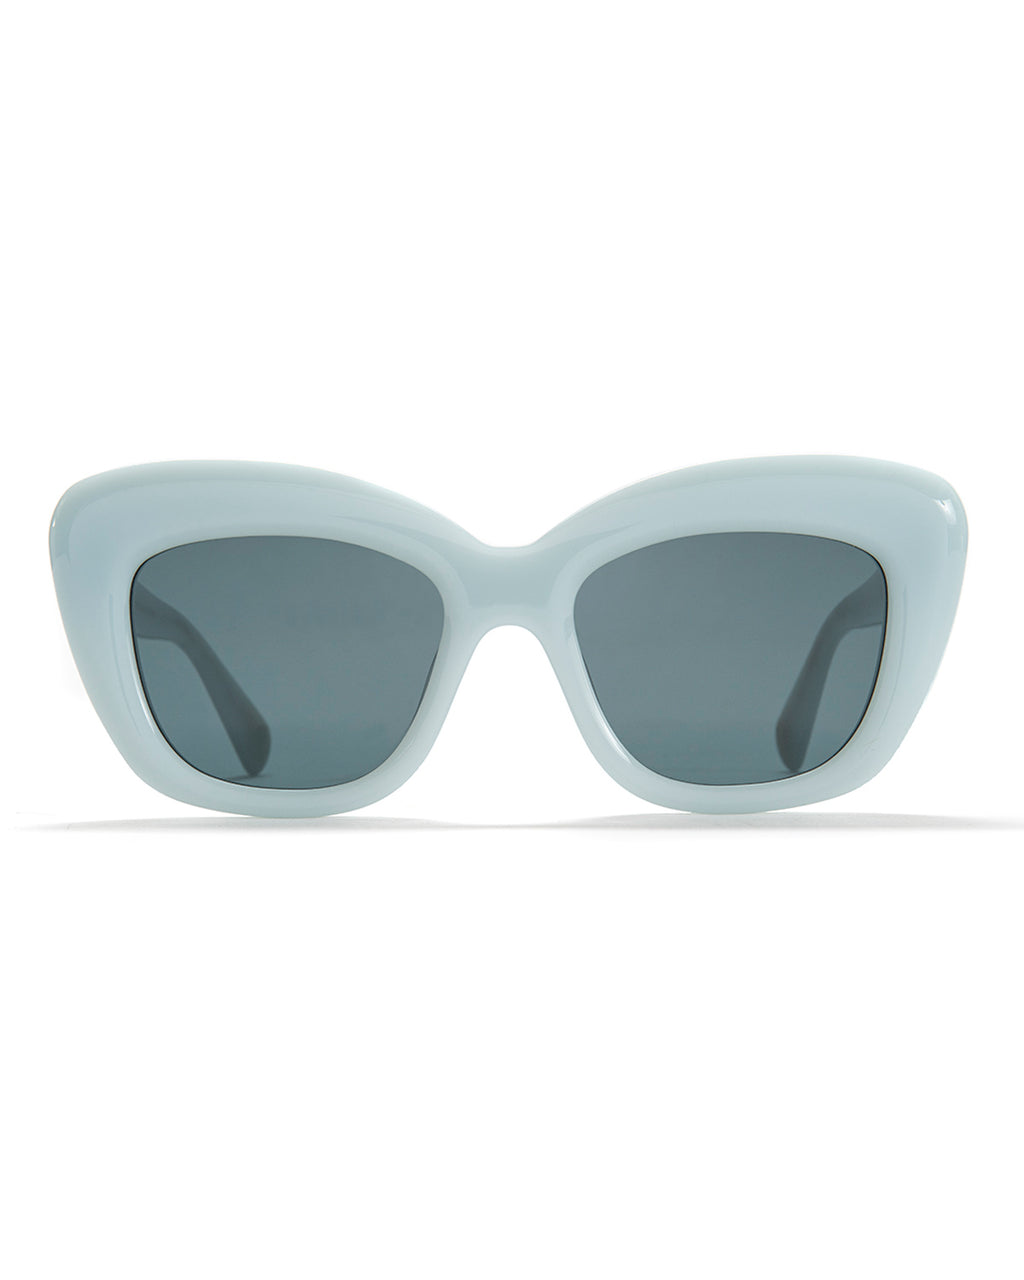 Chibi Sunglasses - Light Blue